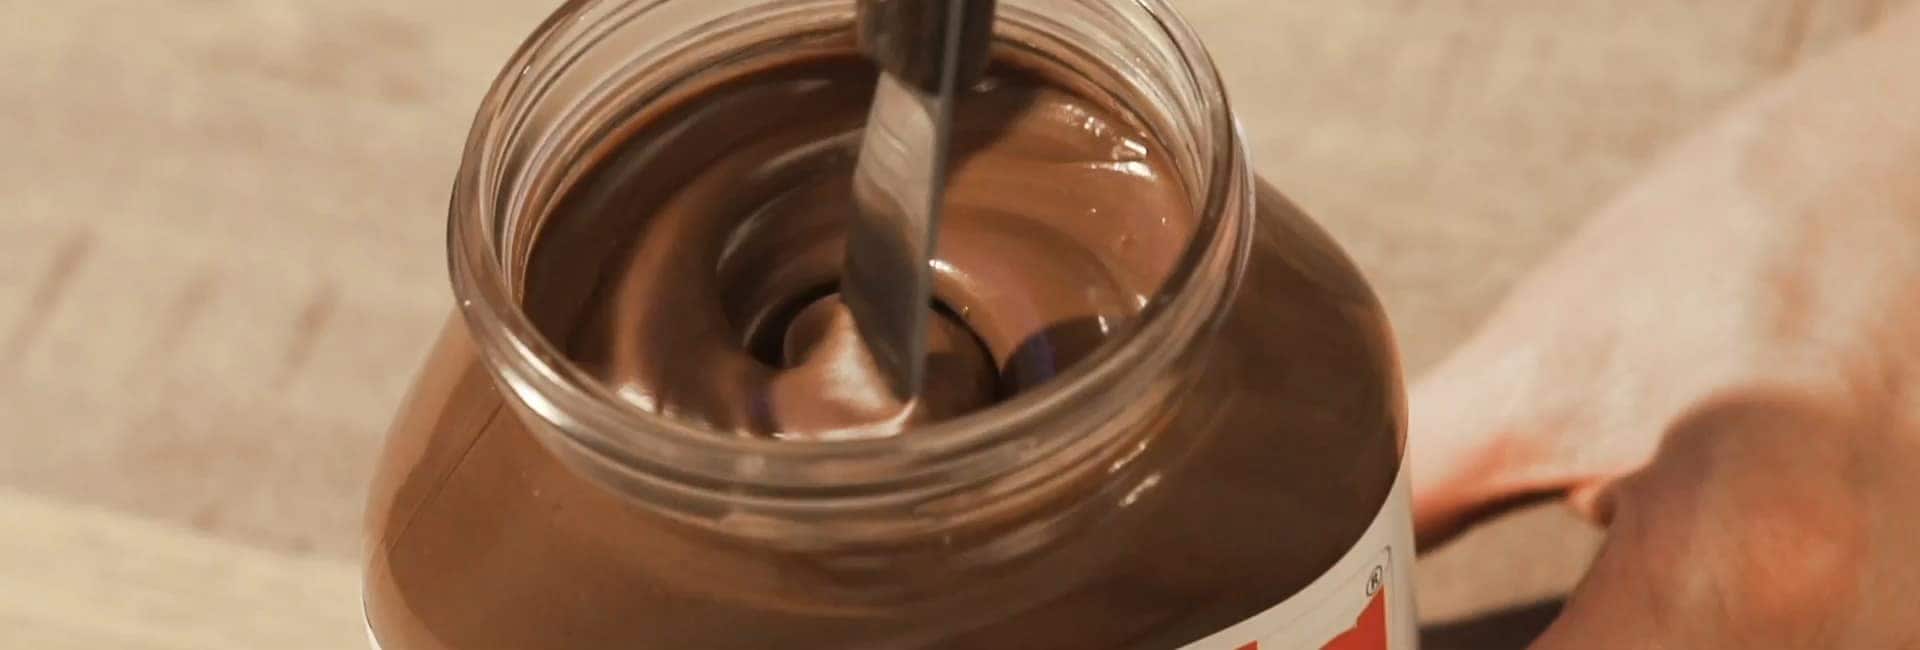 ВИДЕО: 4 простых и вкусных рецепта с Nutella